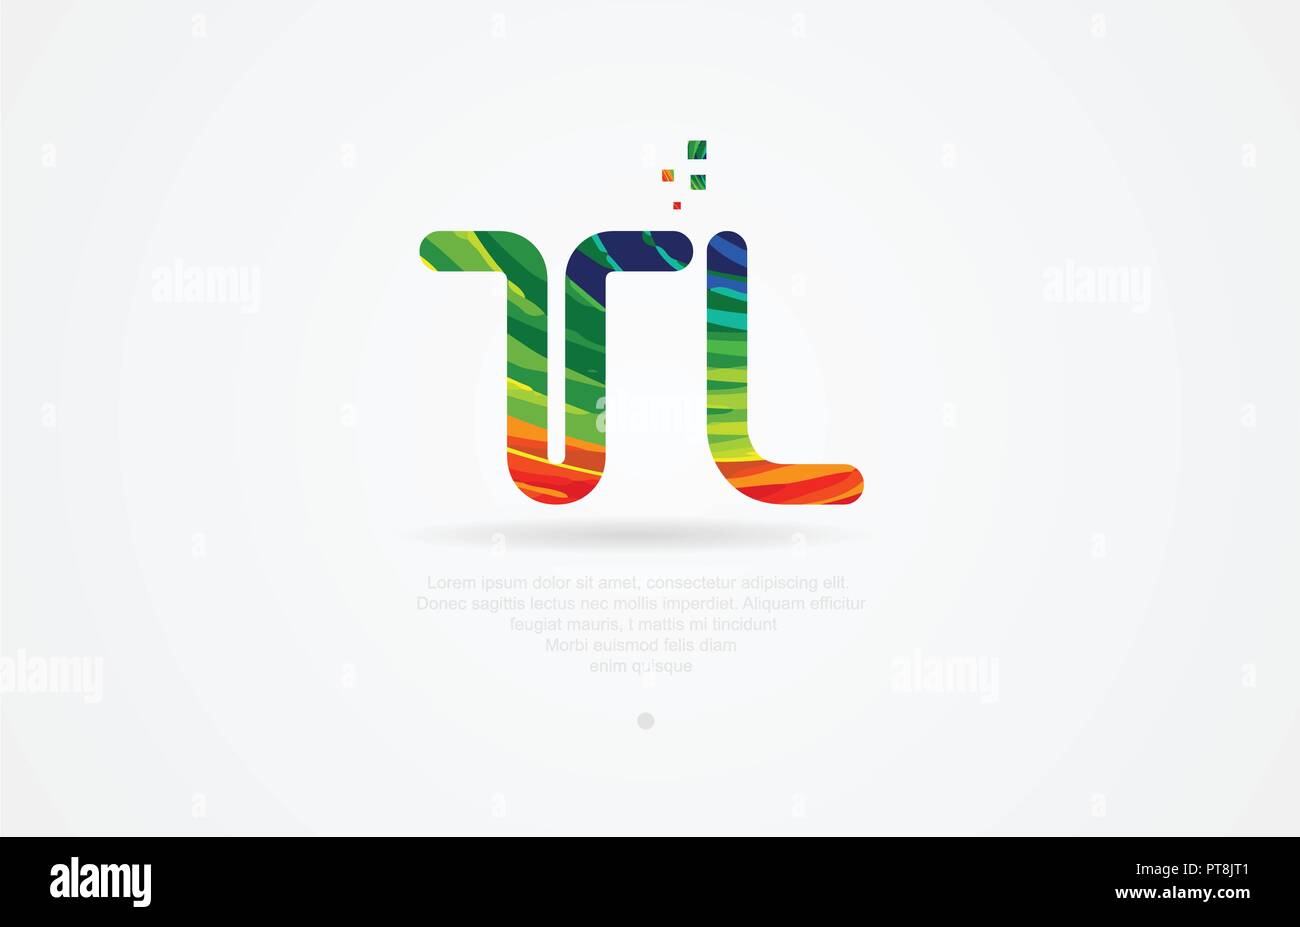 Tl t l Buchstaben logo Symbol Kombination Design mit Regenbogen Farbe Stock Vektor